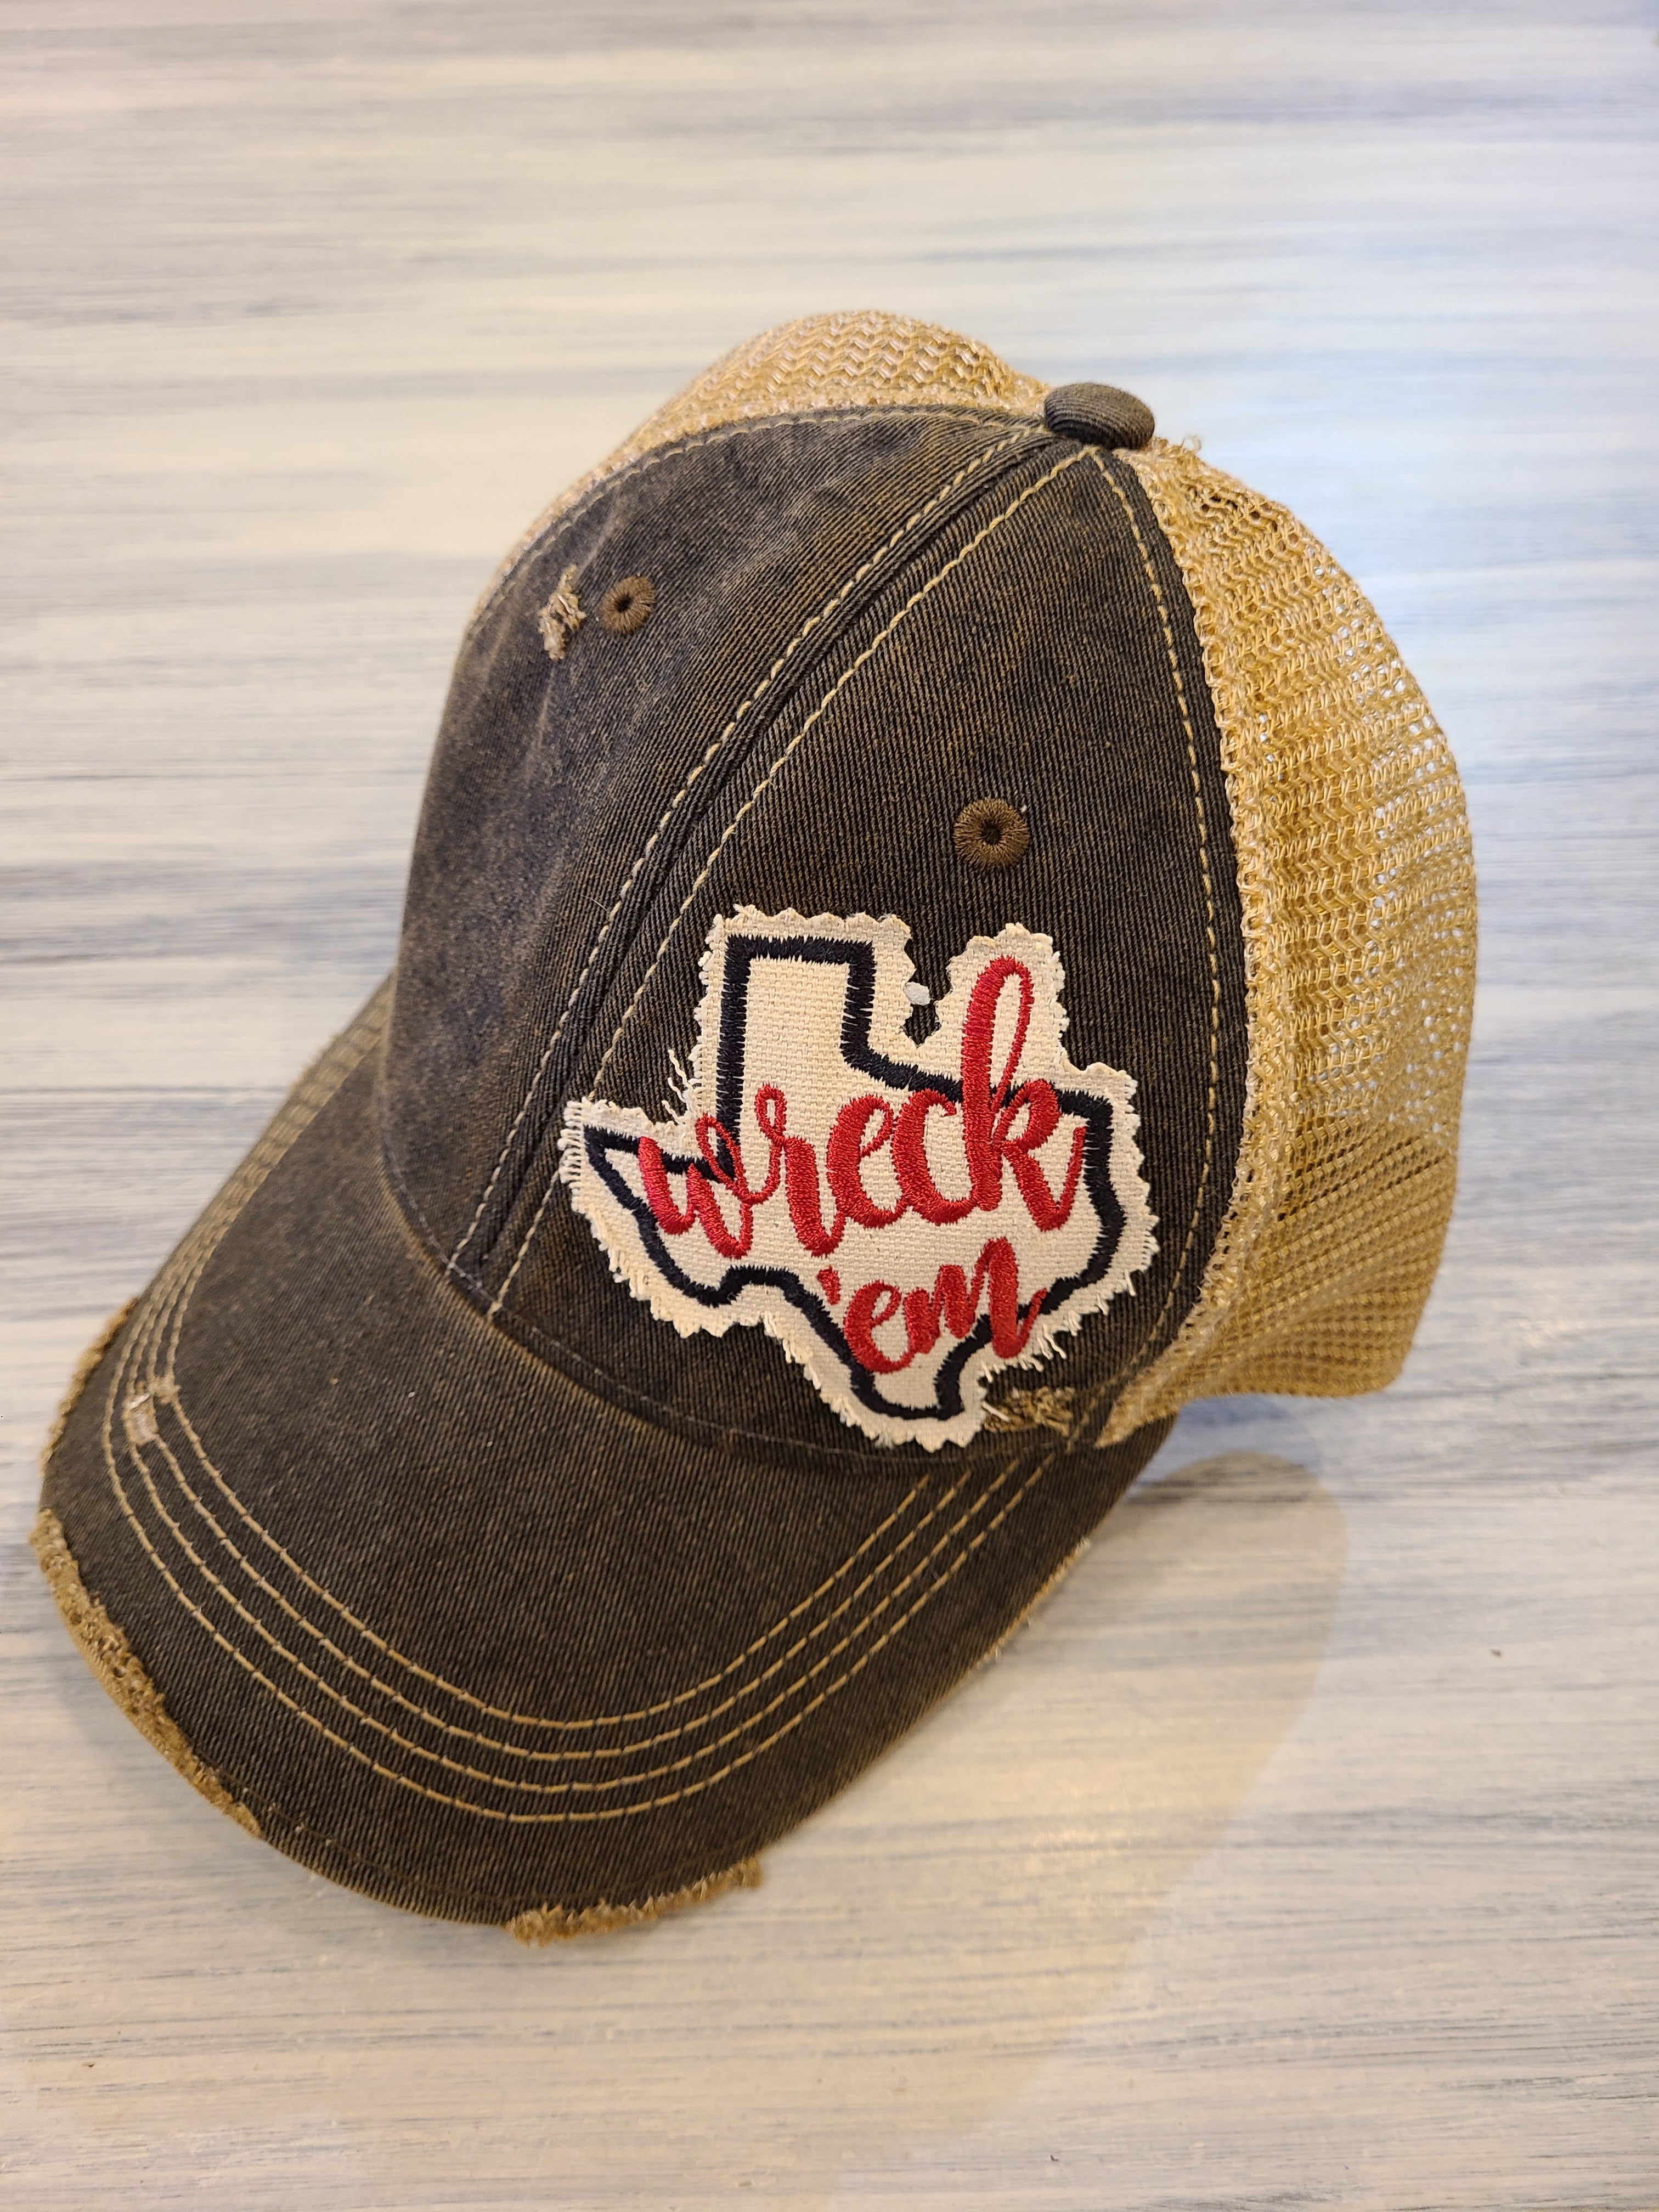 Texas Tech College Baseball Caps